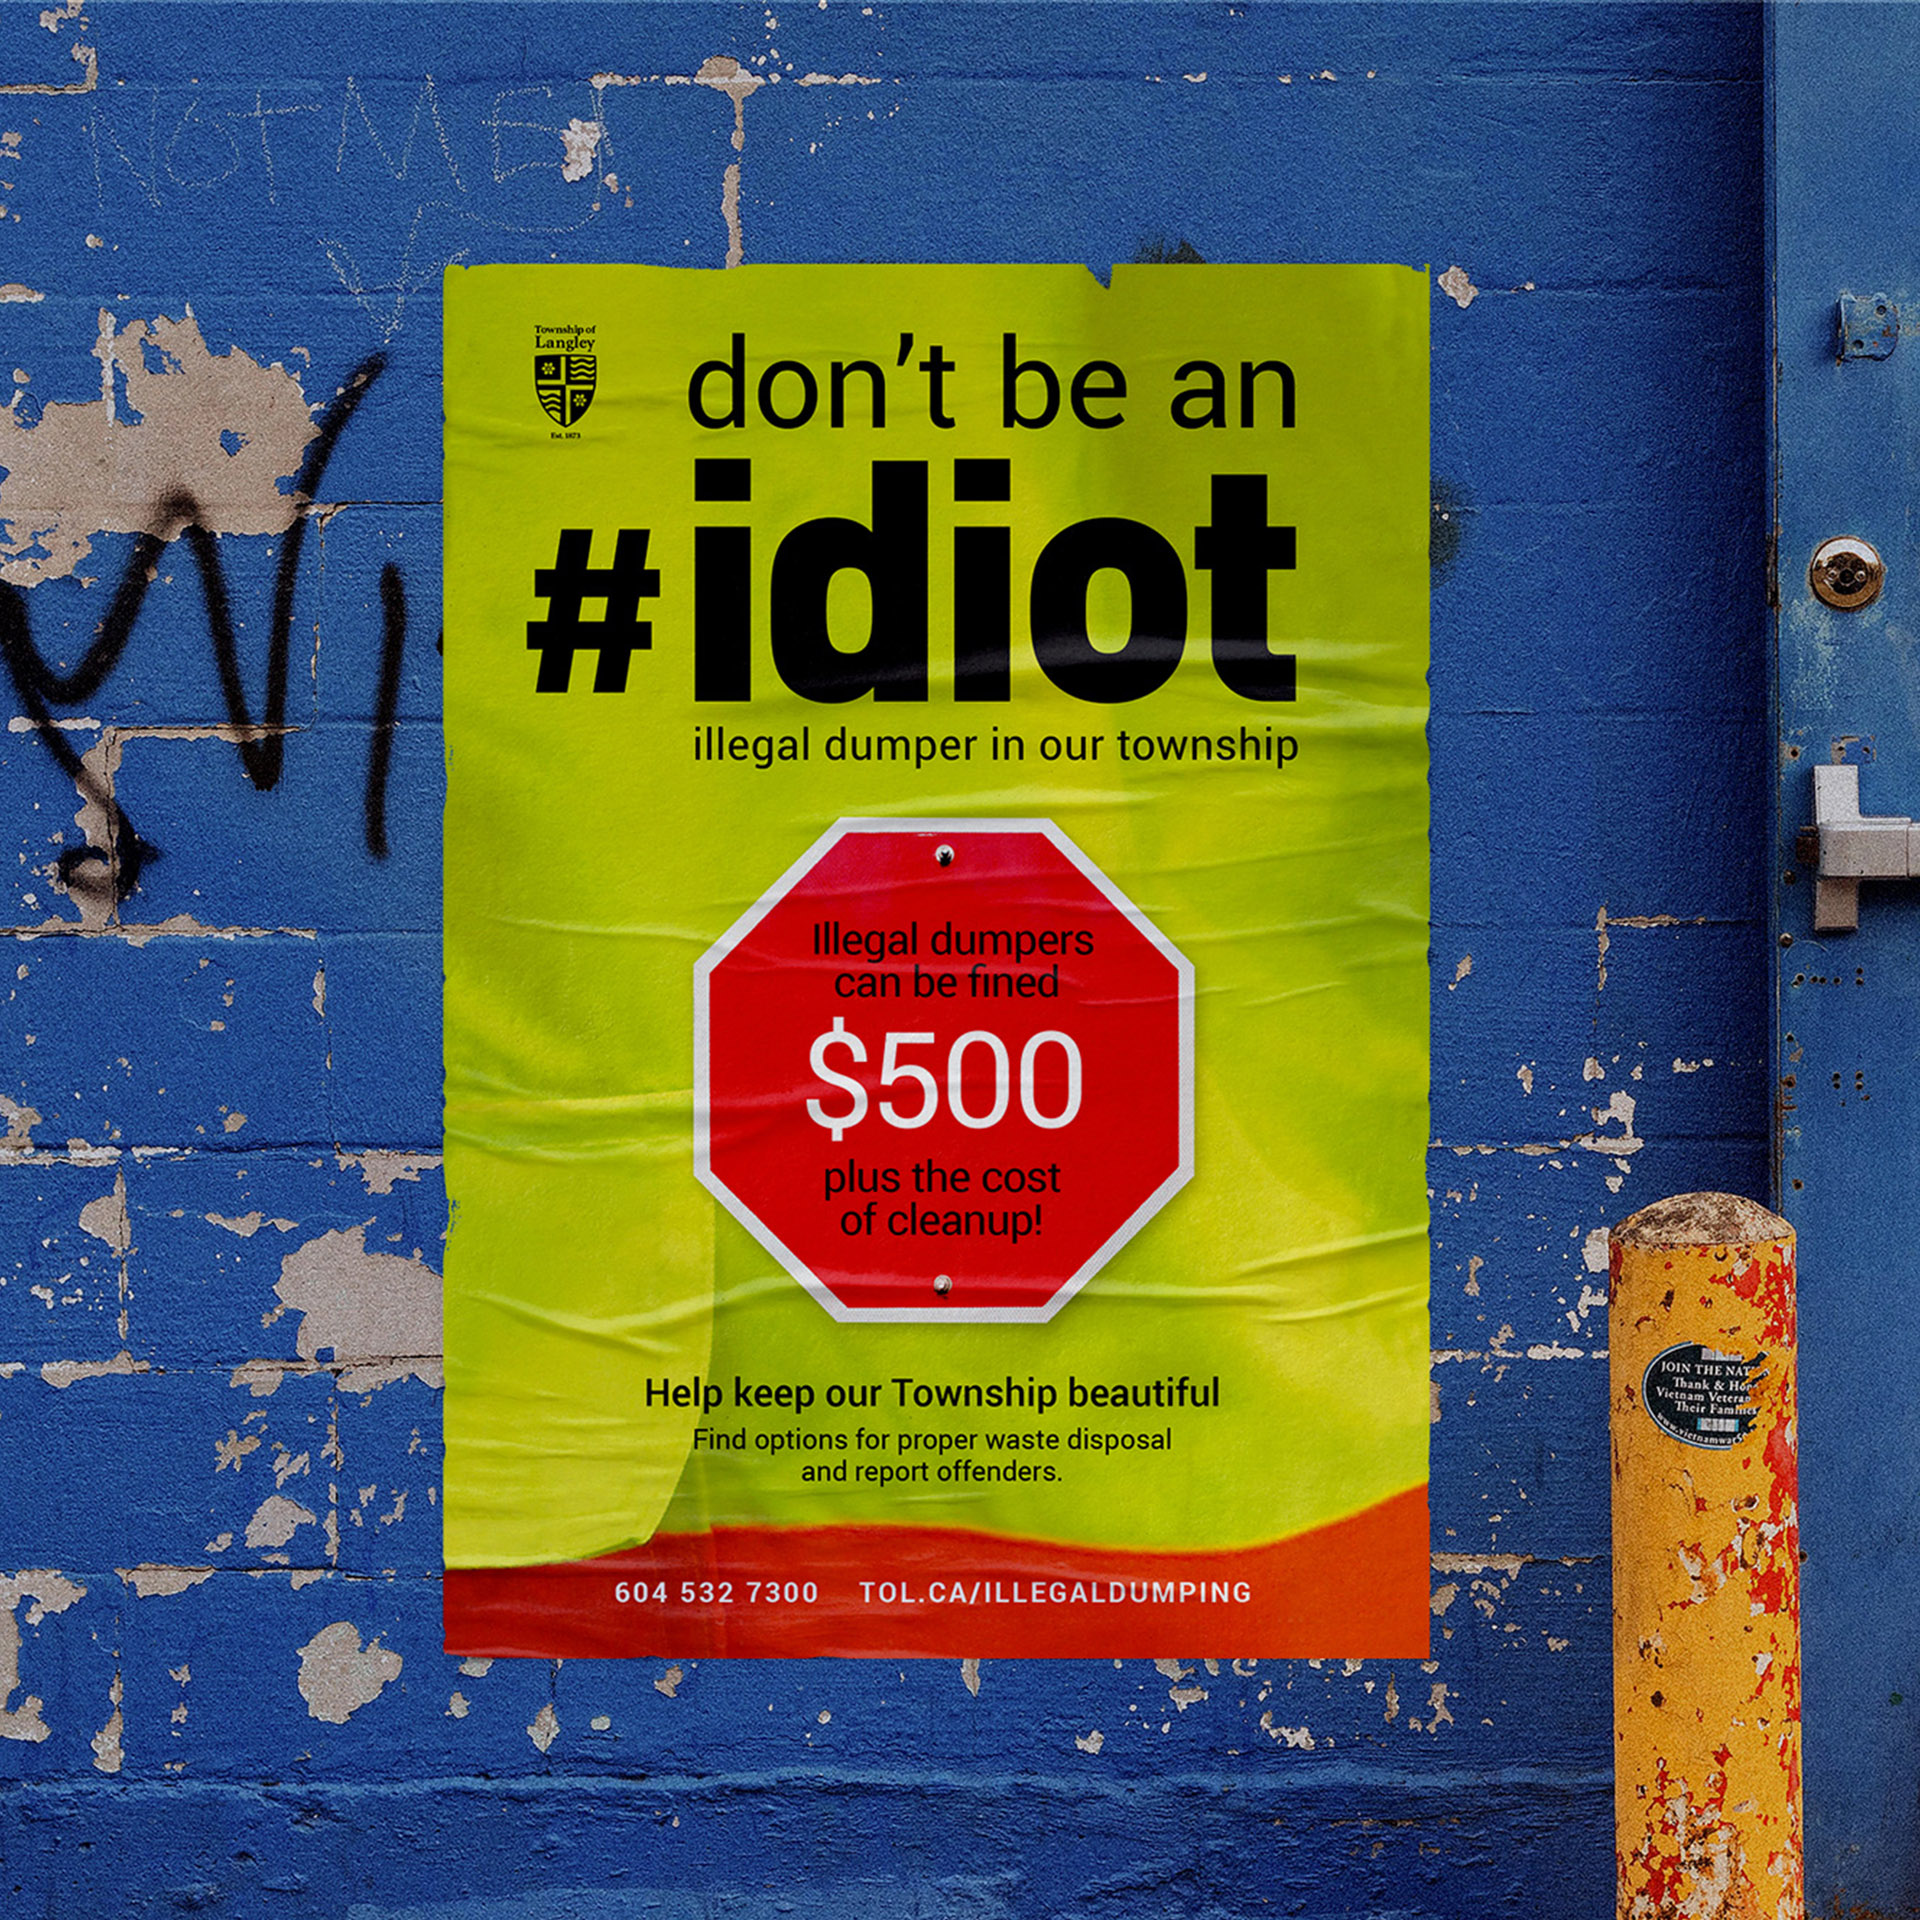 Don’t be an #idiot